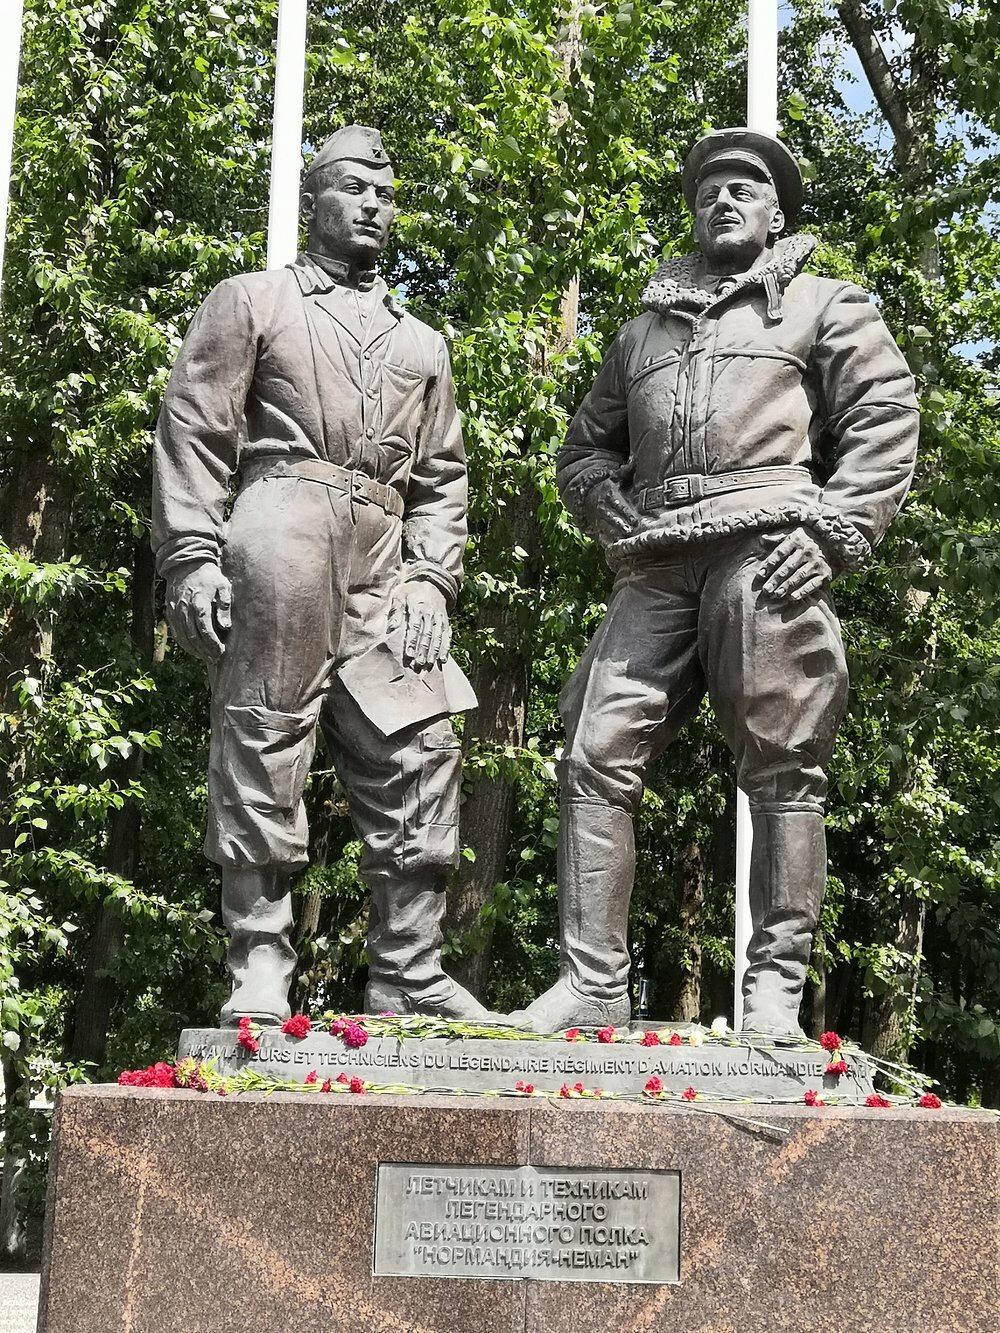 Памятник Нормандия Неман в Иваново